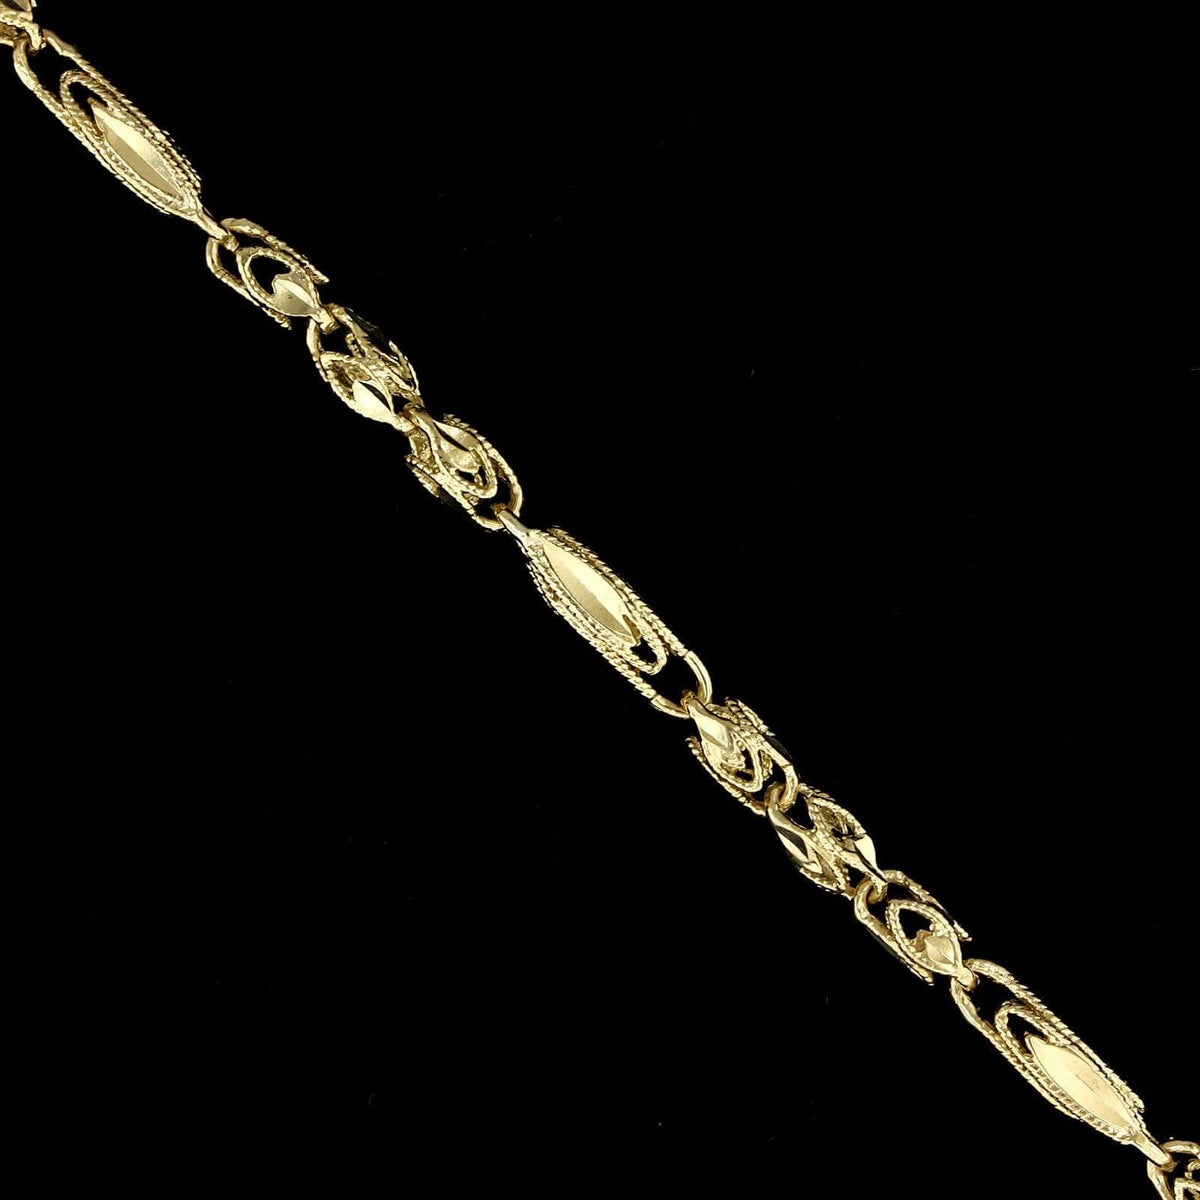 14K Yellow Gold Estate Fancy Link Bracelet